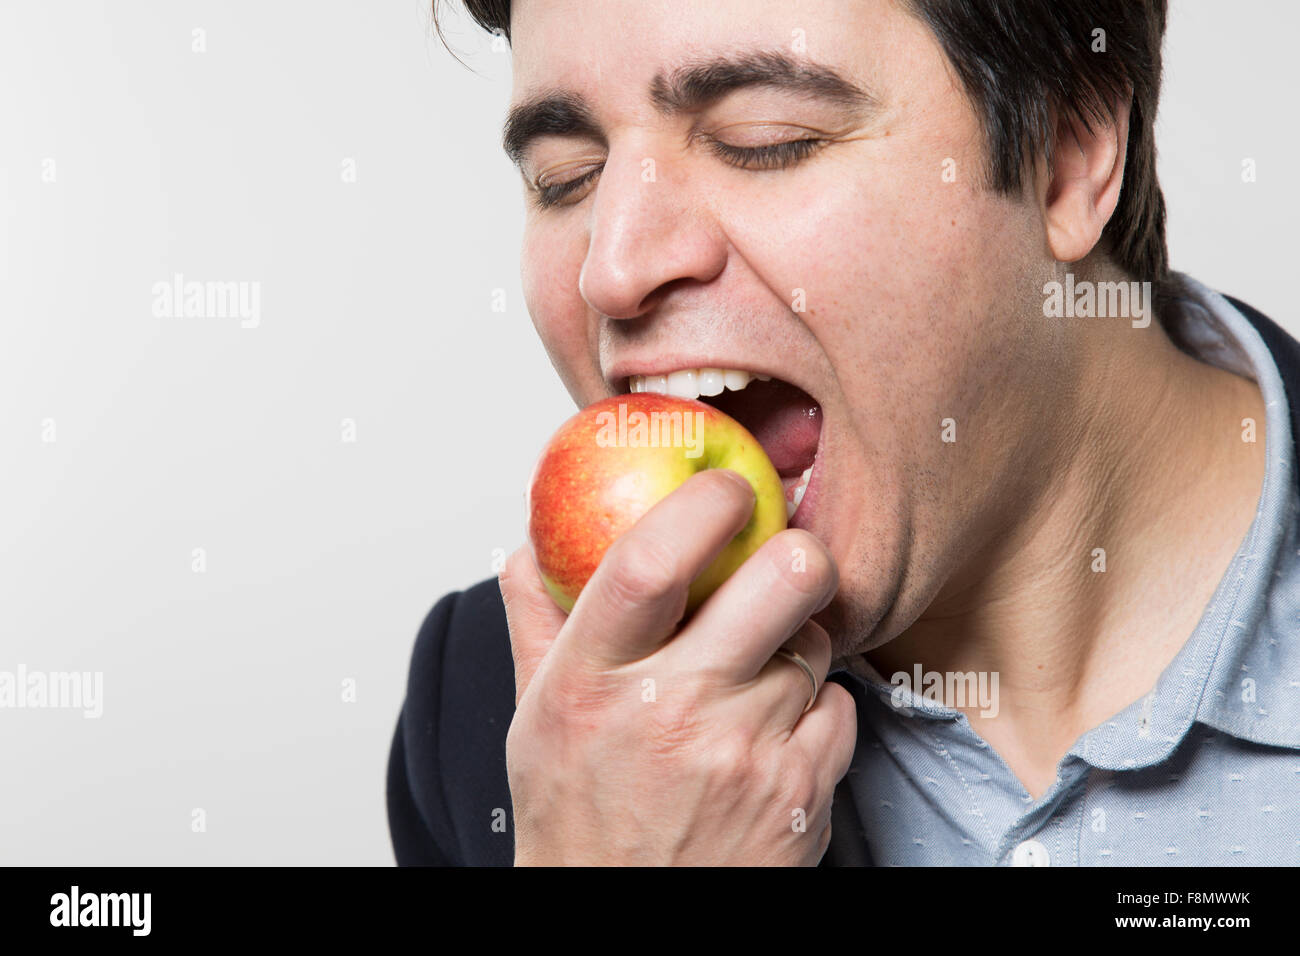 Bite out of life. Человек ест яблоко. Человек поедающий яблоко. Кусает яблоко.